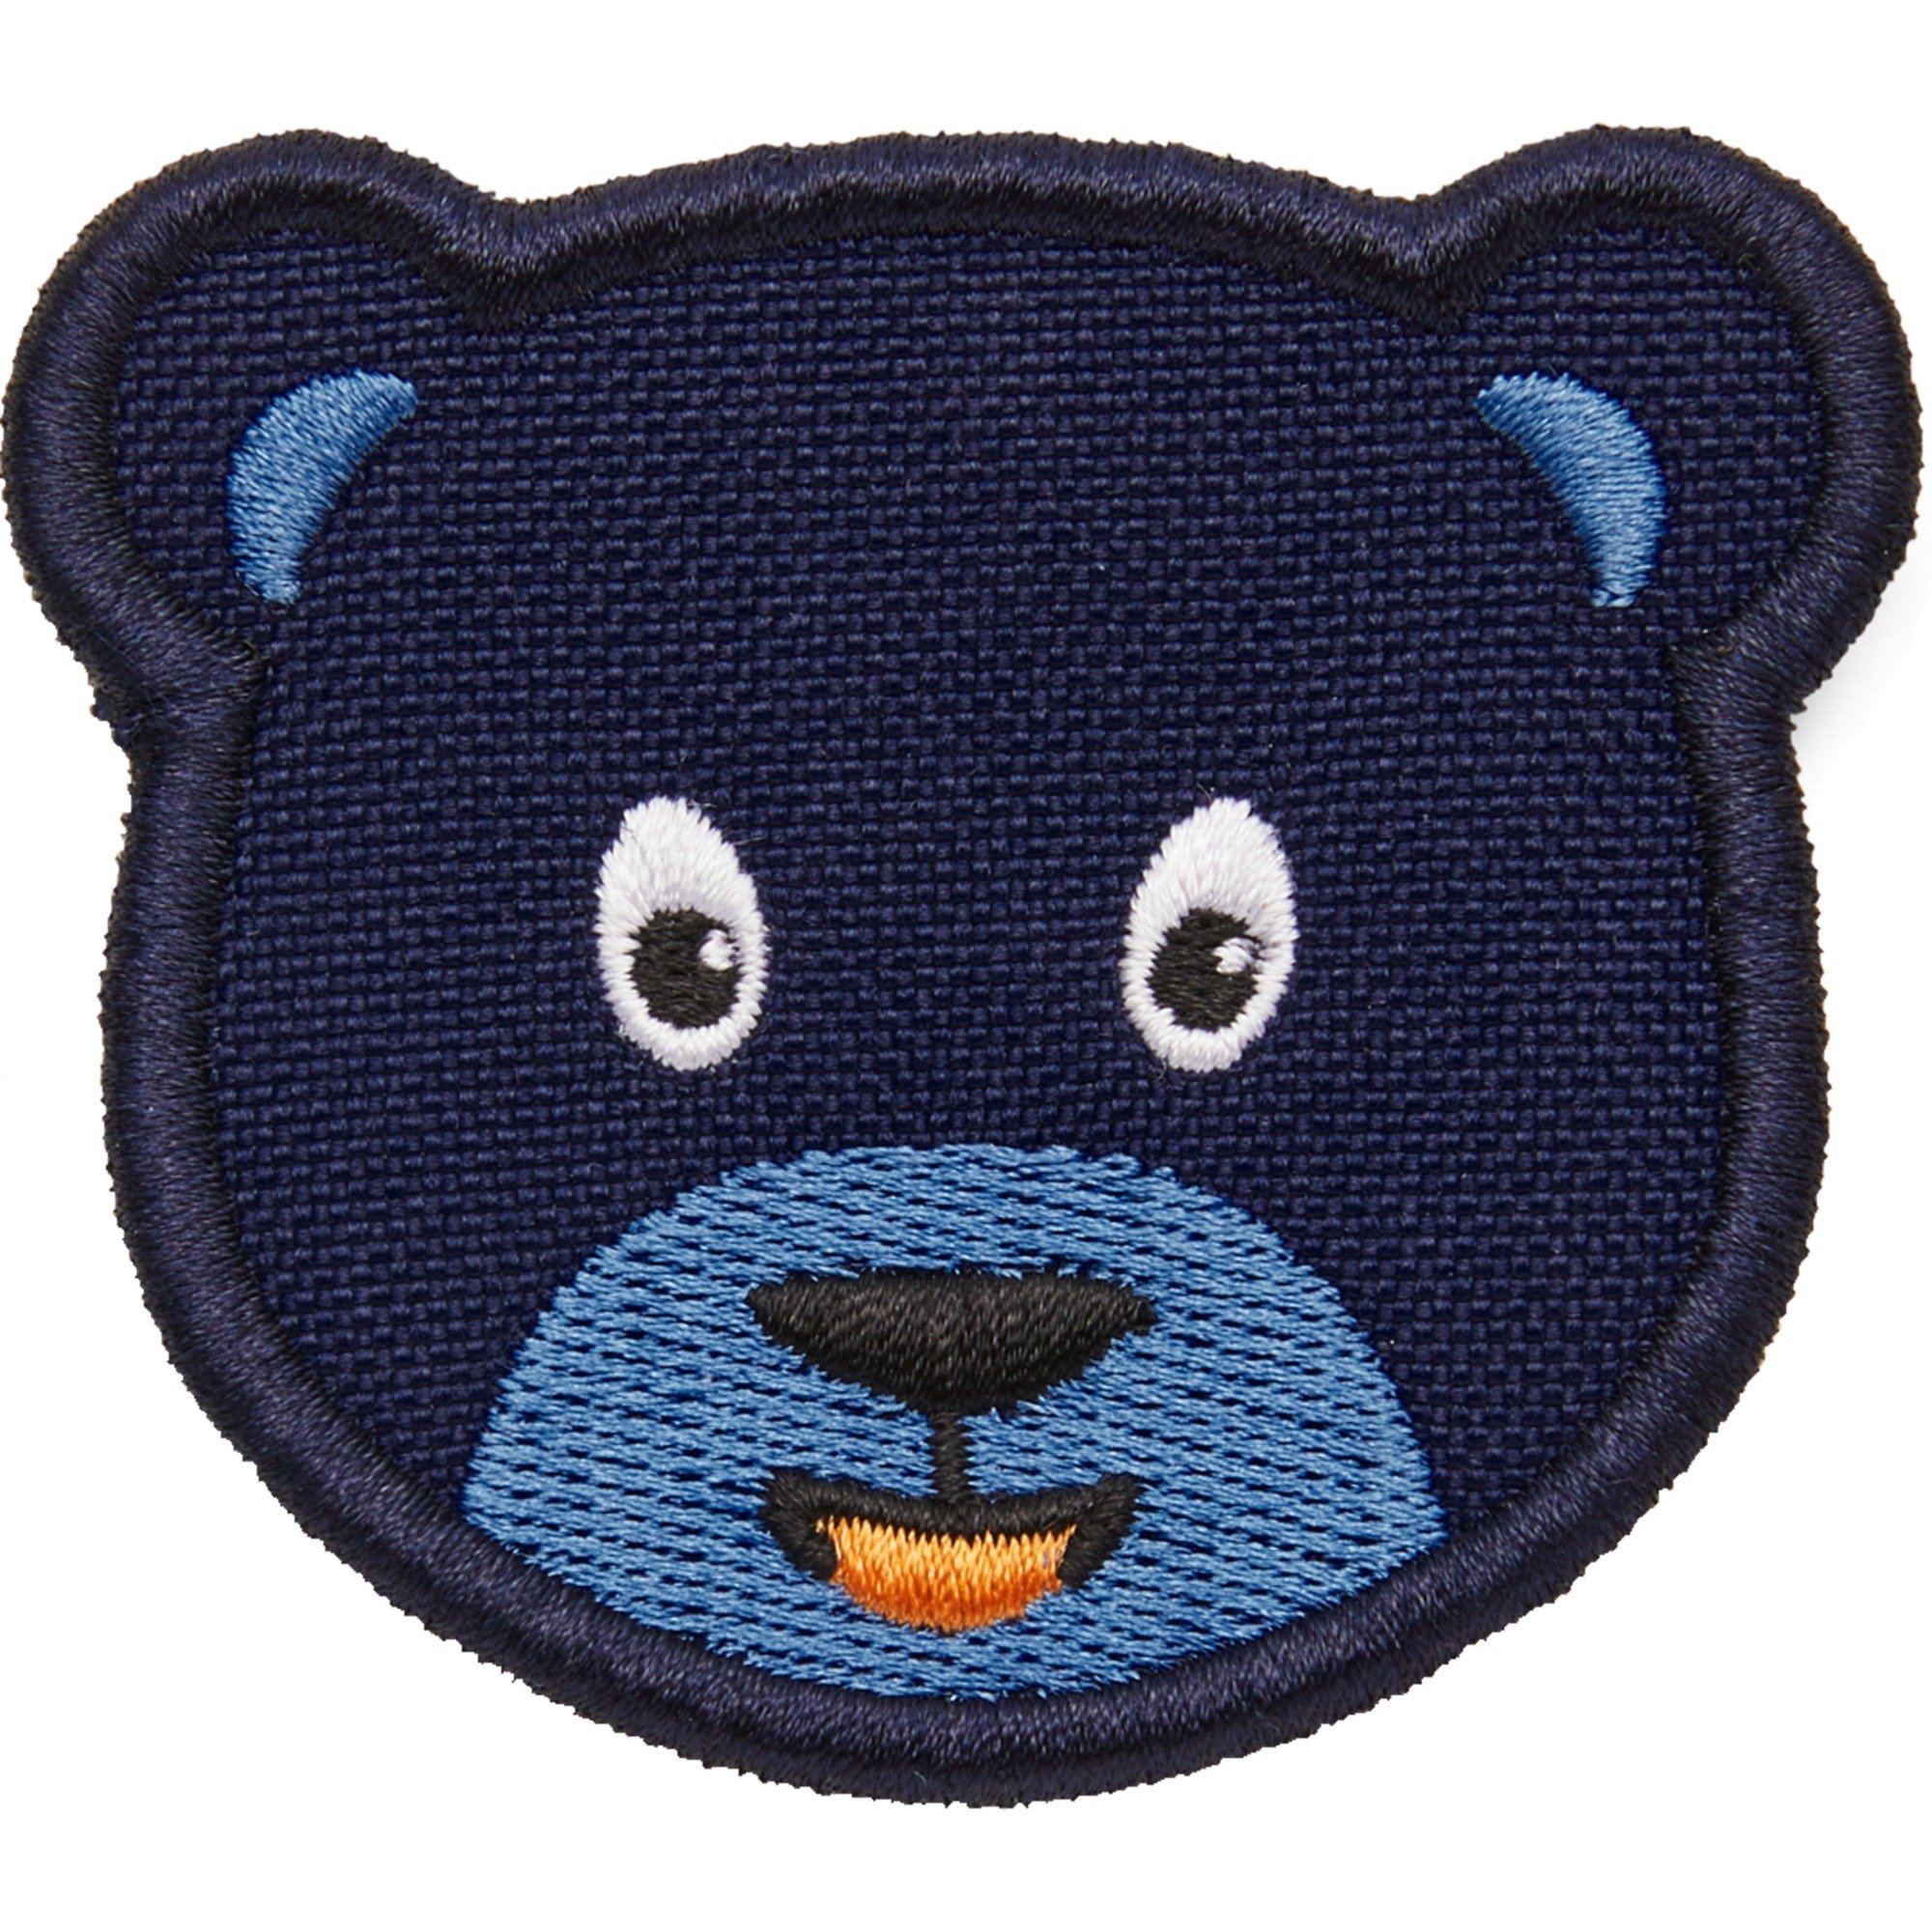 Image of Alternate - Klett-Badge Bär, Patch online einkaufen bei Alternate